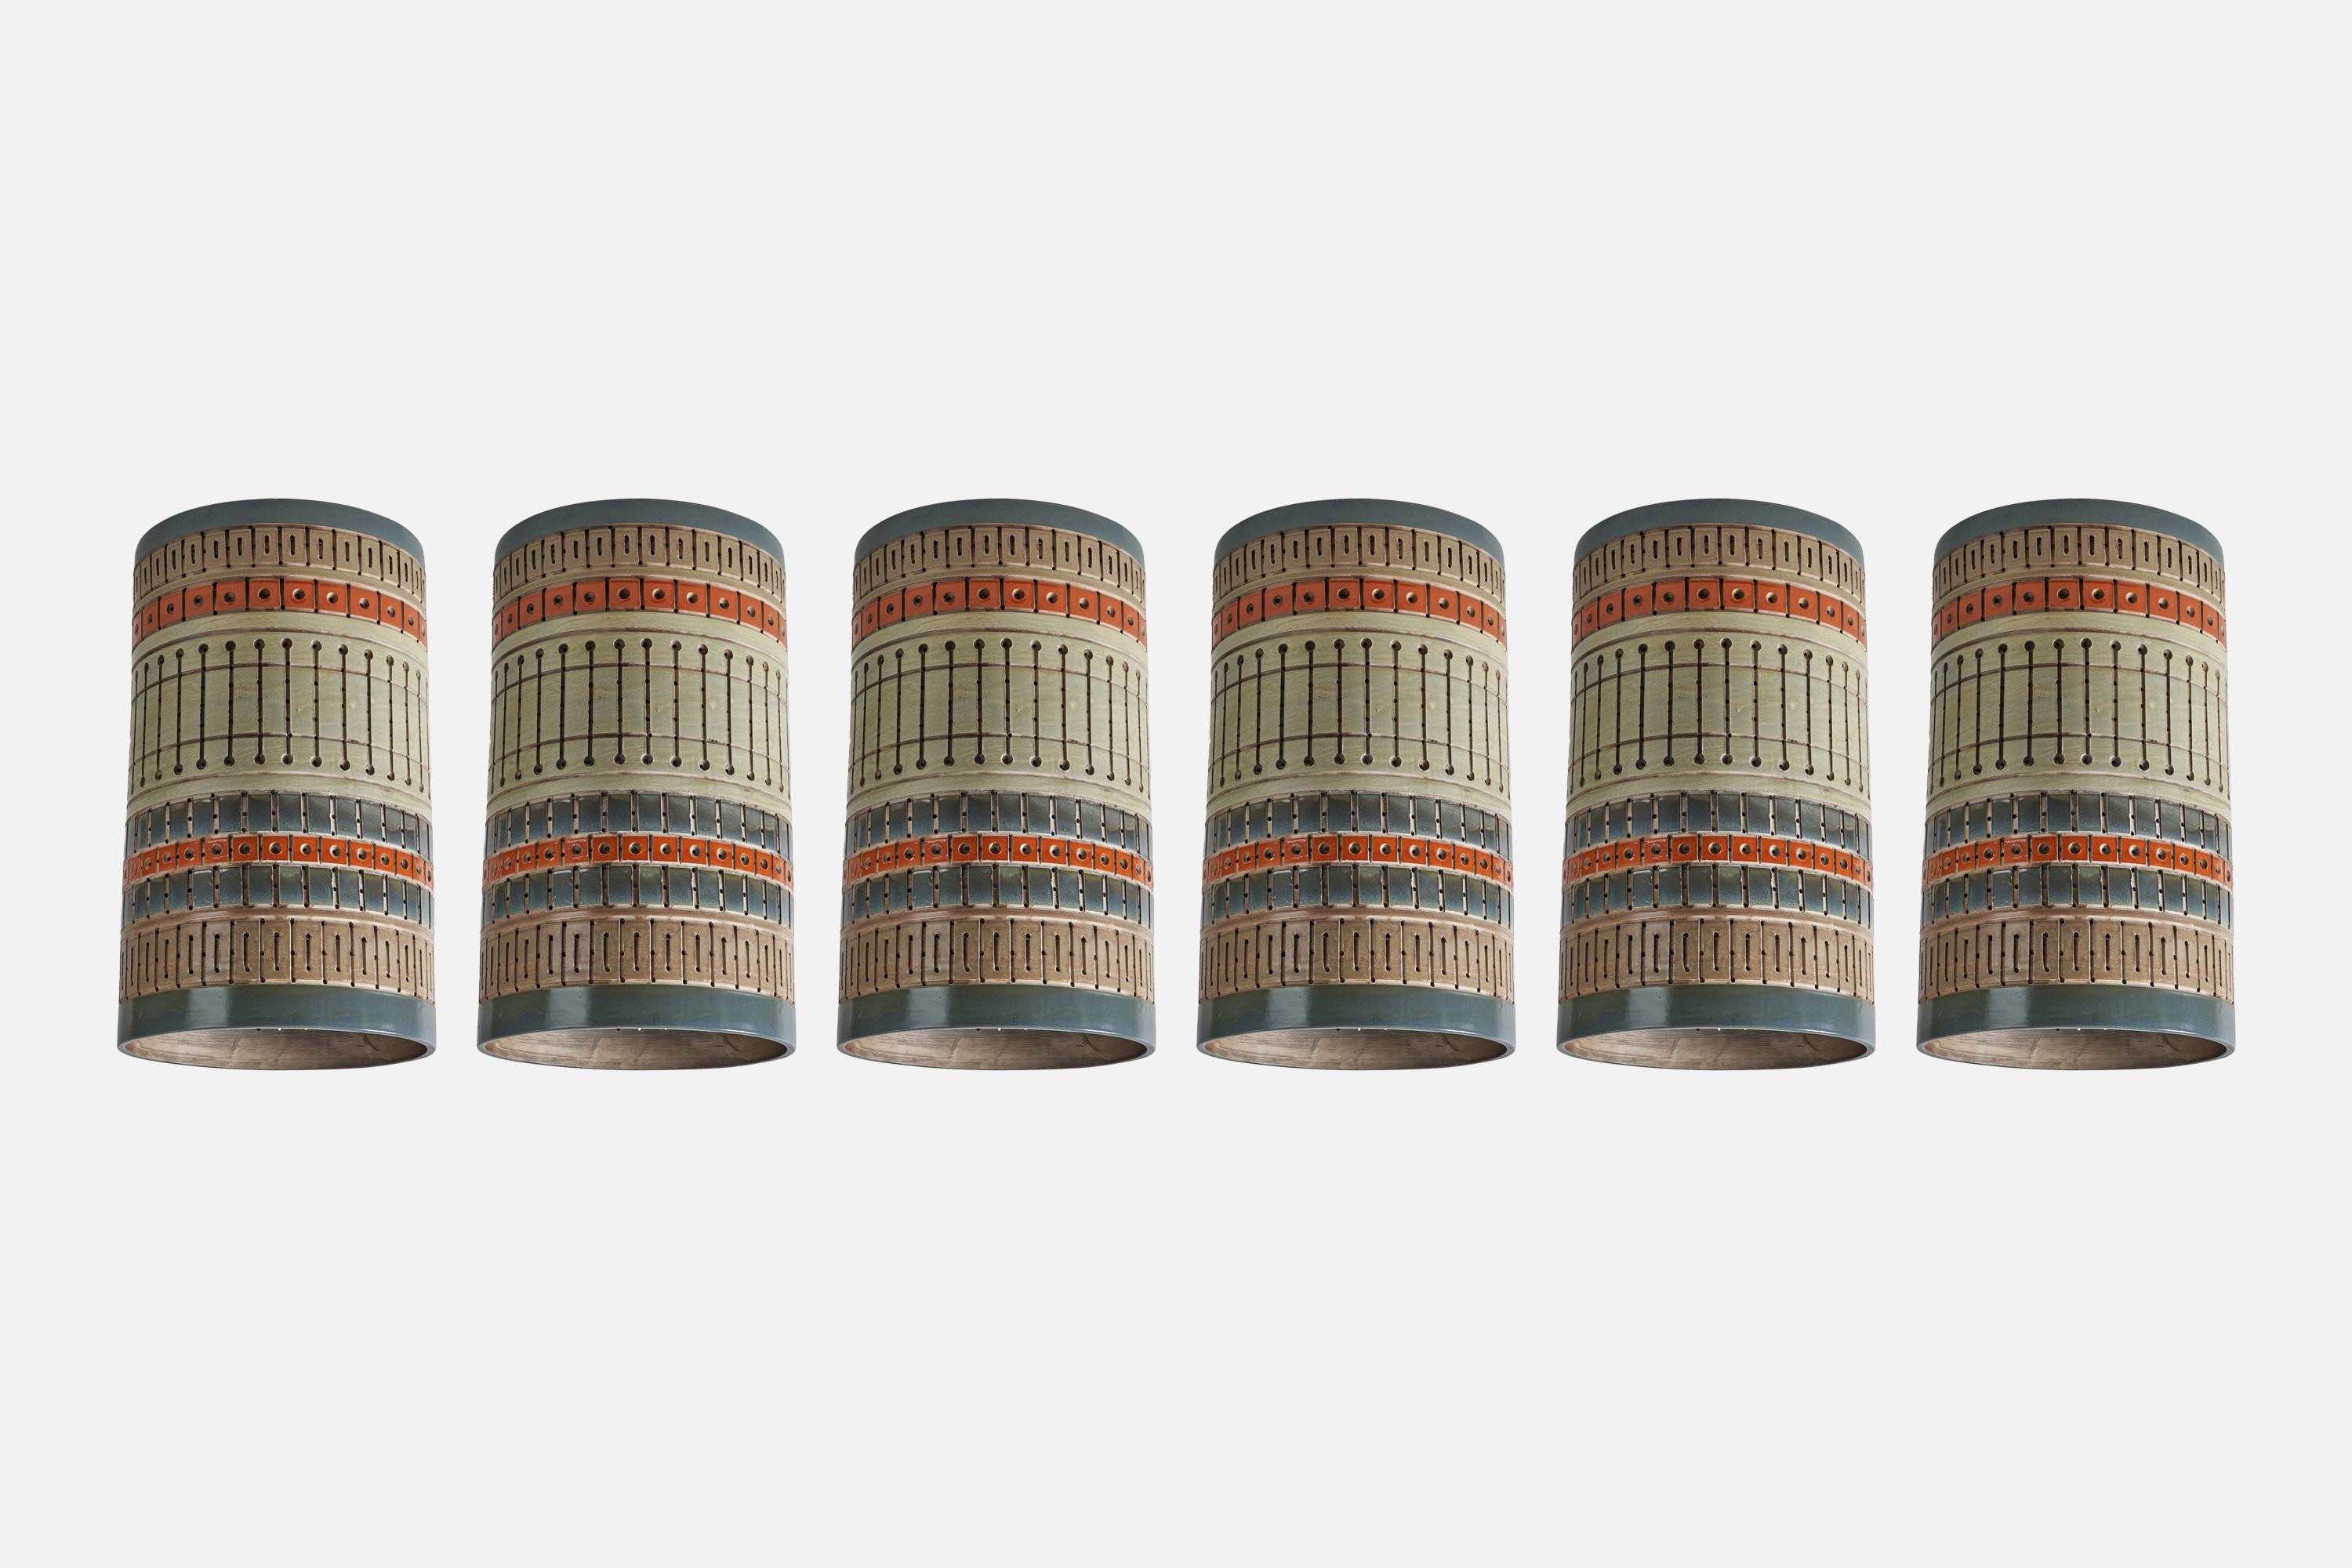 Handbemalte Keramikhalterungen oder -anhänger, entworfen und hergestellt von Martha und Beaumont Mood, San Antonio, Texas, USA, 1970er Jahre.

Der Baldachin ist nicht im Lieferumfang enthalten.

Fassung für Standard-Glühbirne E-26 mit mittlerem